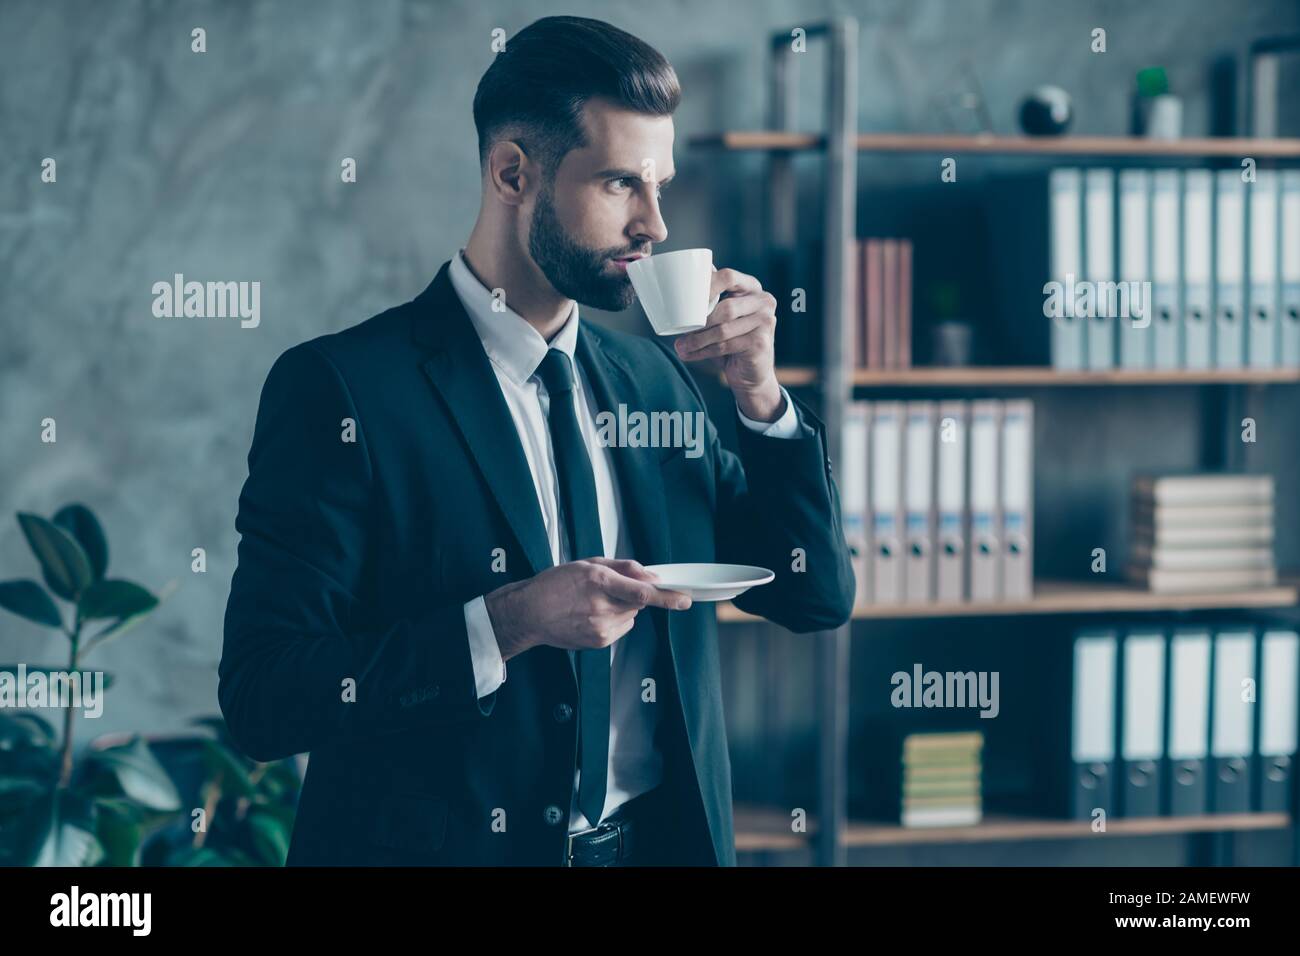 Foto de perfil de un hombre de negocios de éxito persona con confianza para  sí mismo mantener café bebida plato mirar ventana ropa de cuidado negro  blazer camisa corbata traje Fotografía de